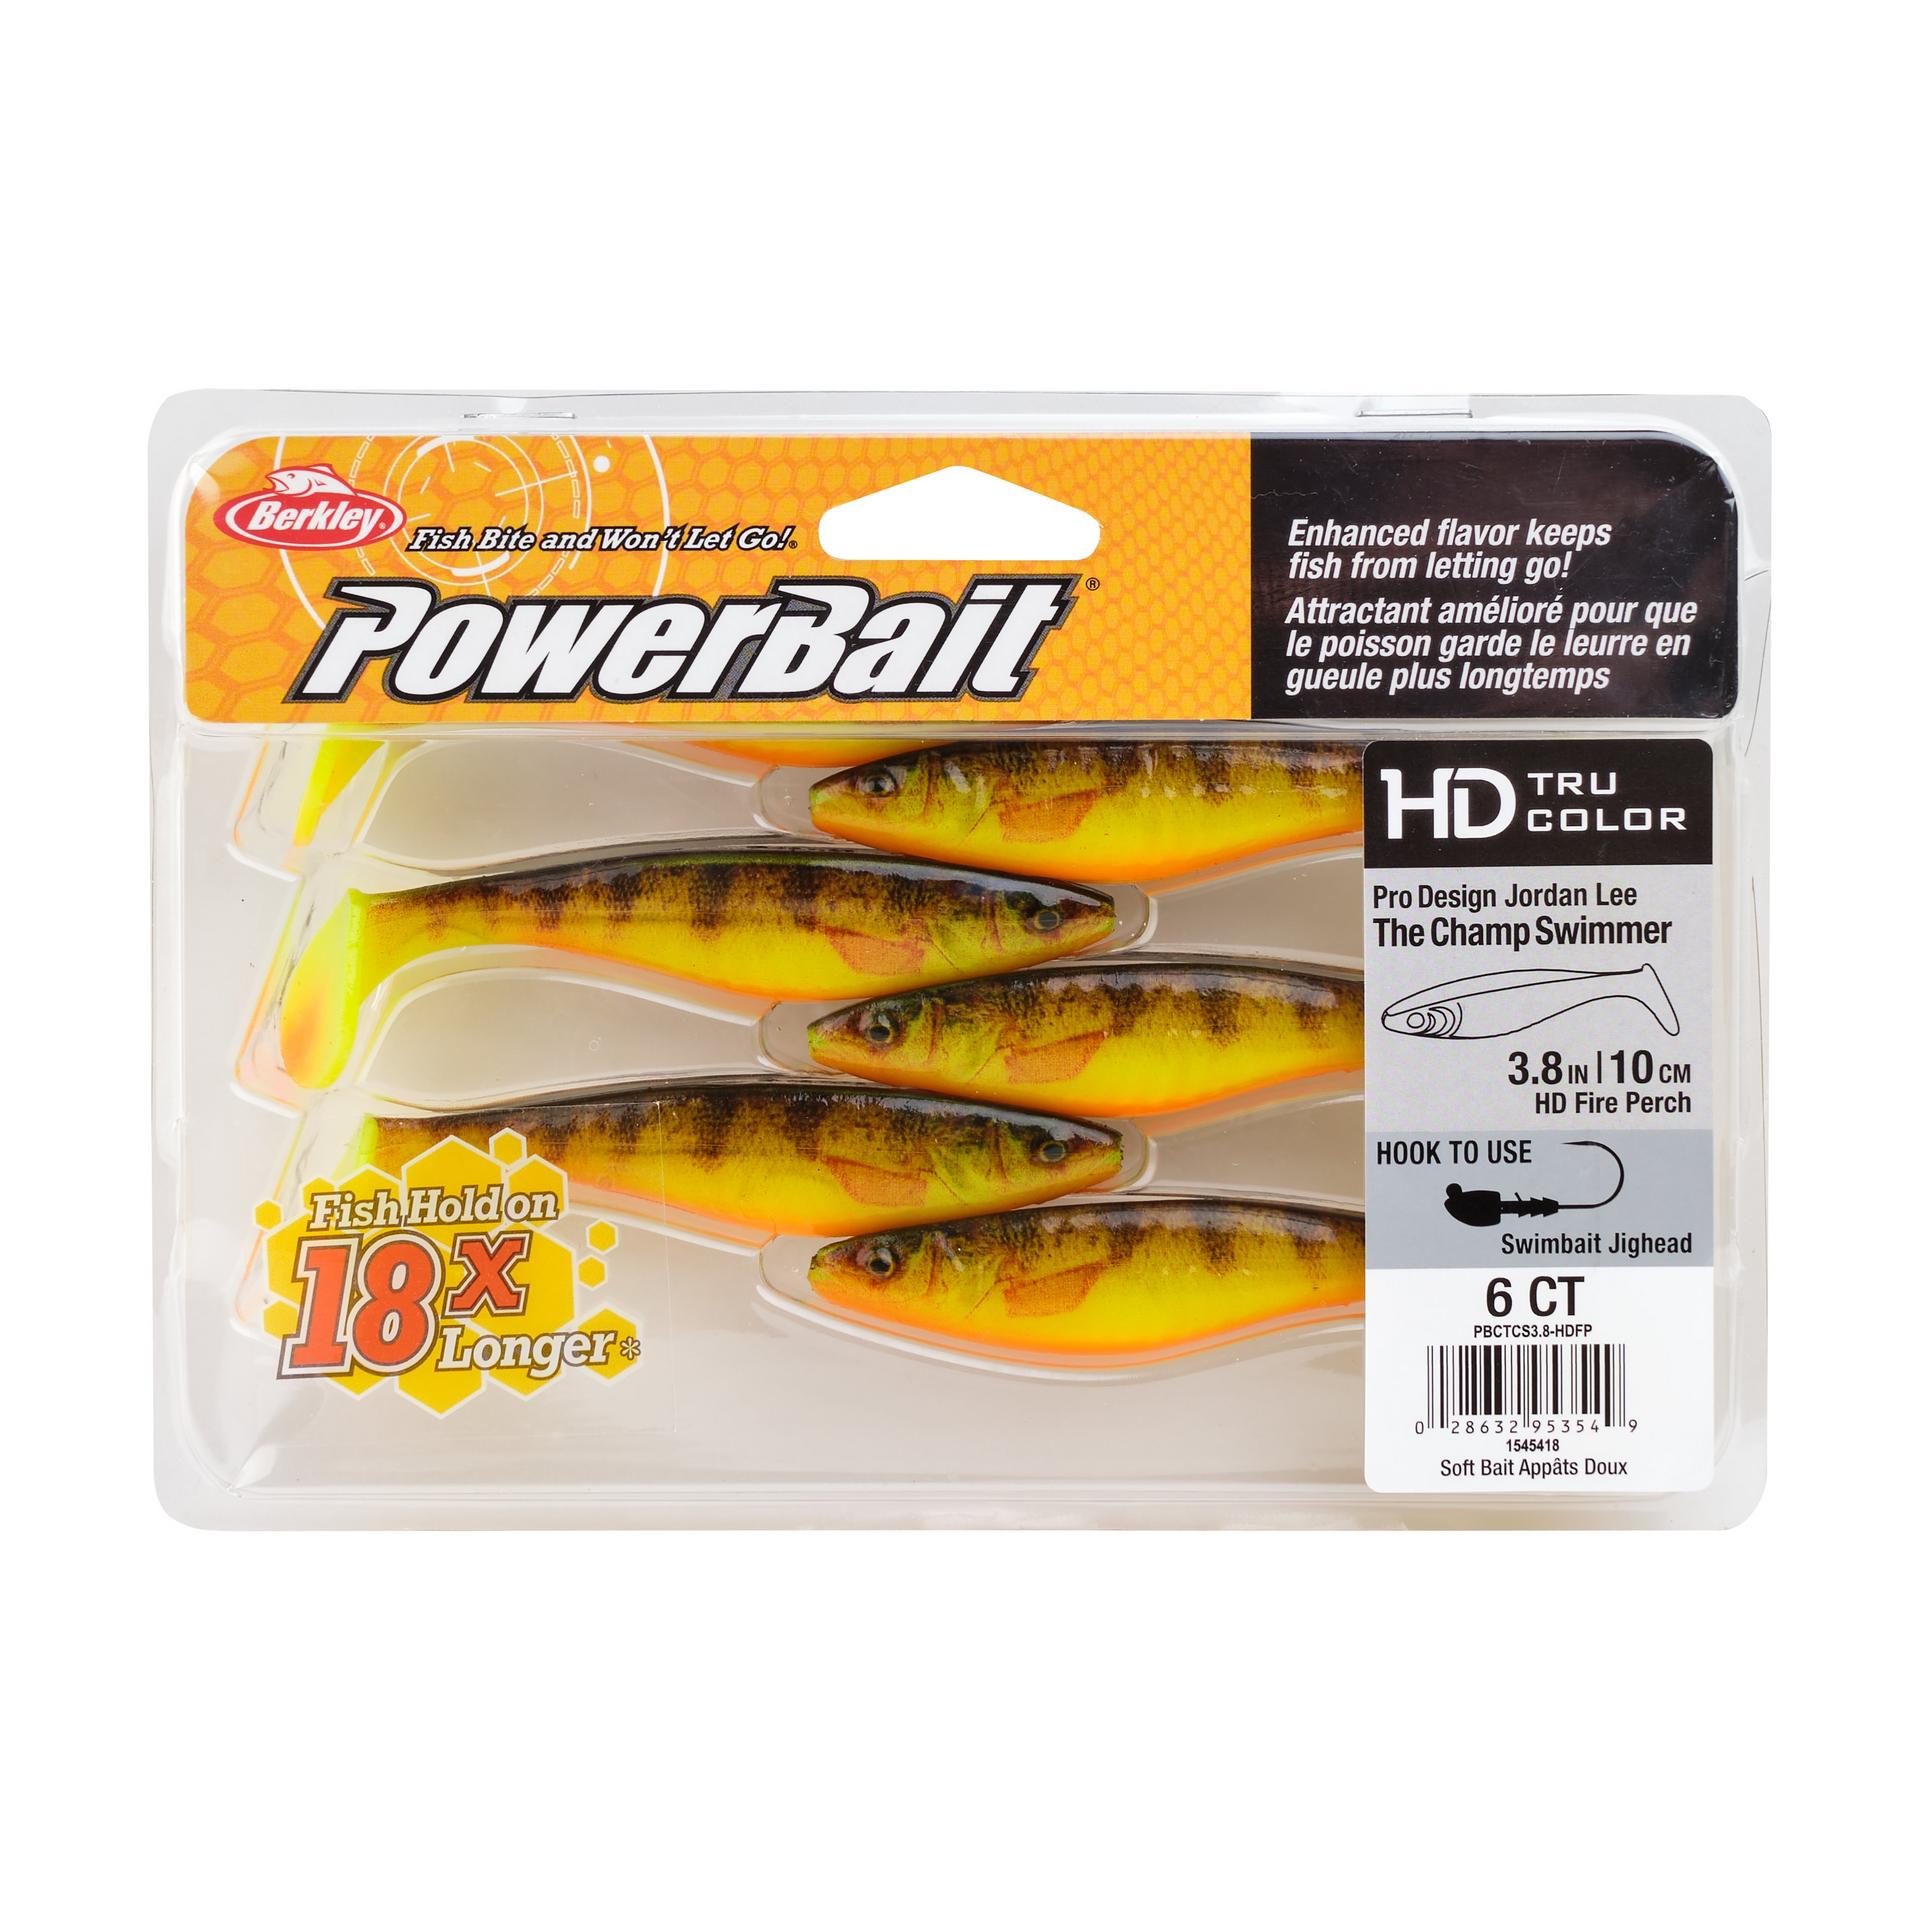 PowerBaitTheChampSwimmer HDFirePerch 3.8in PKG | Berkley Fishing